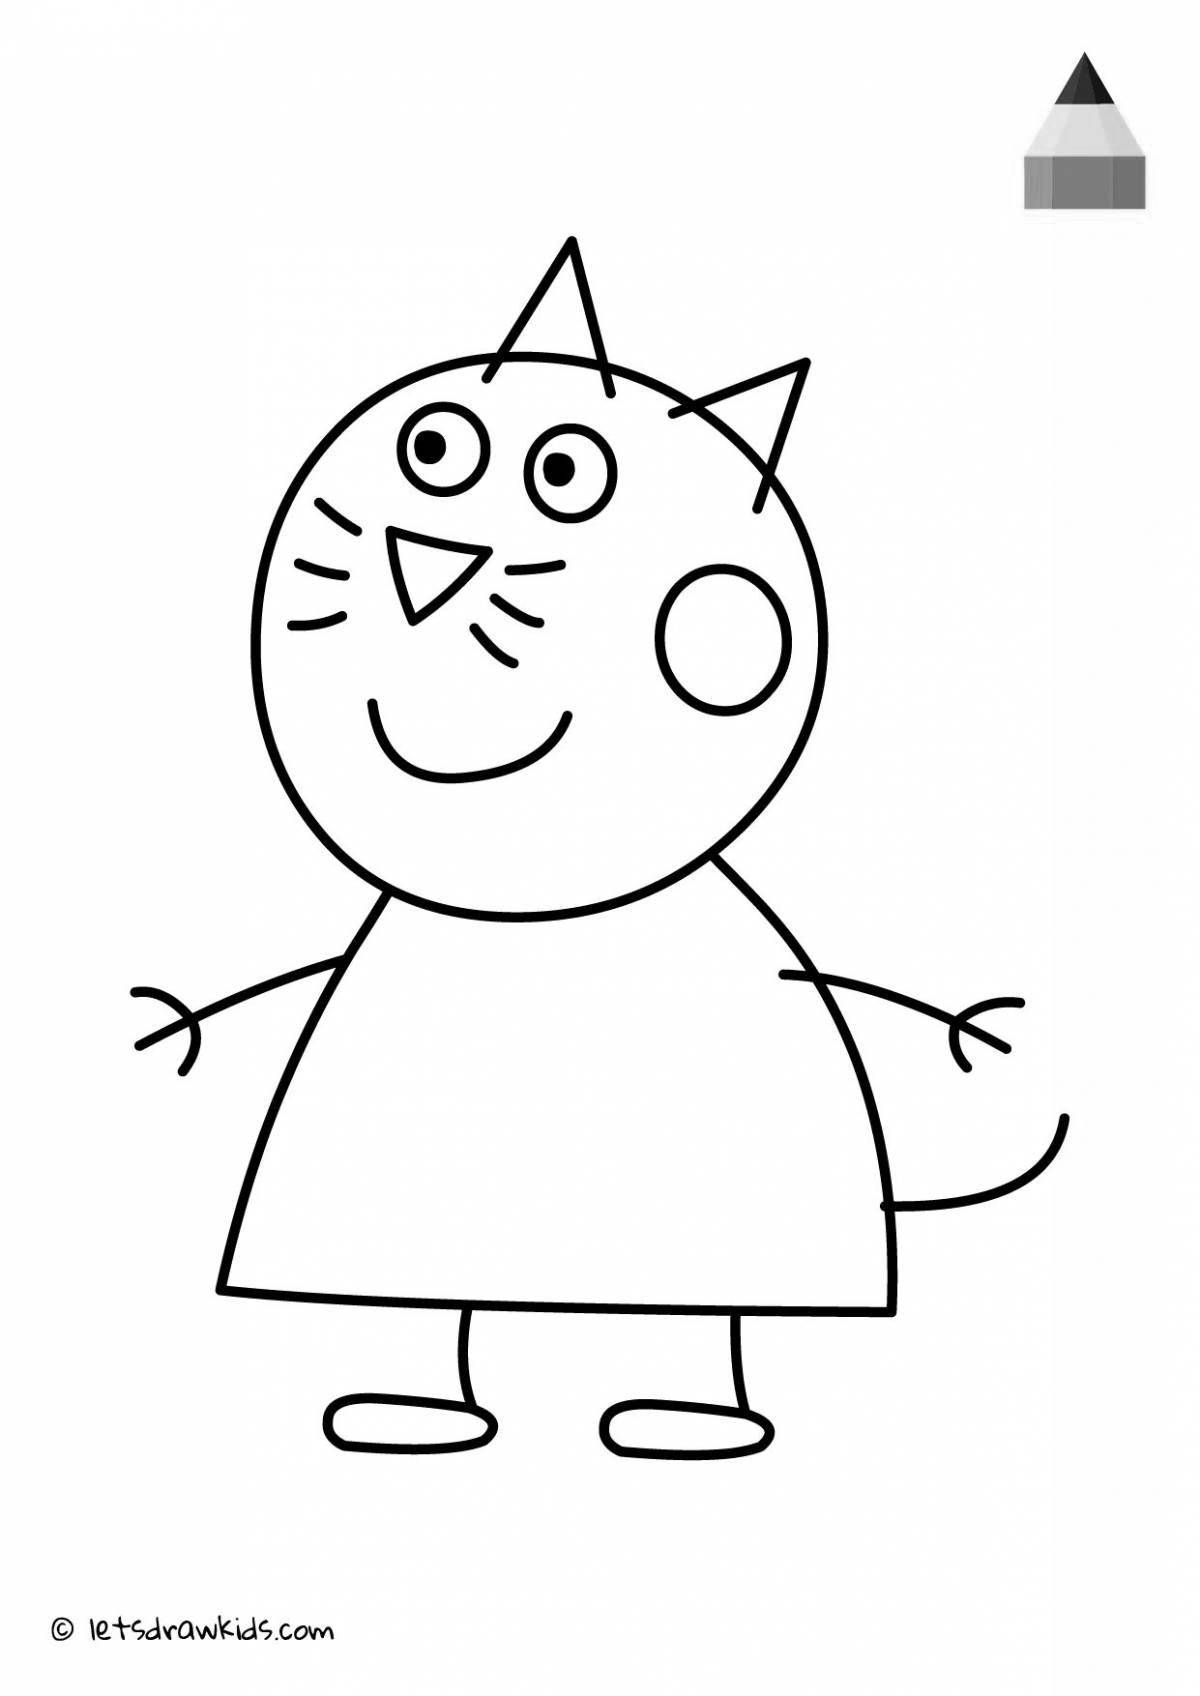 Раскраска яркая карамельная кошка